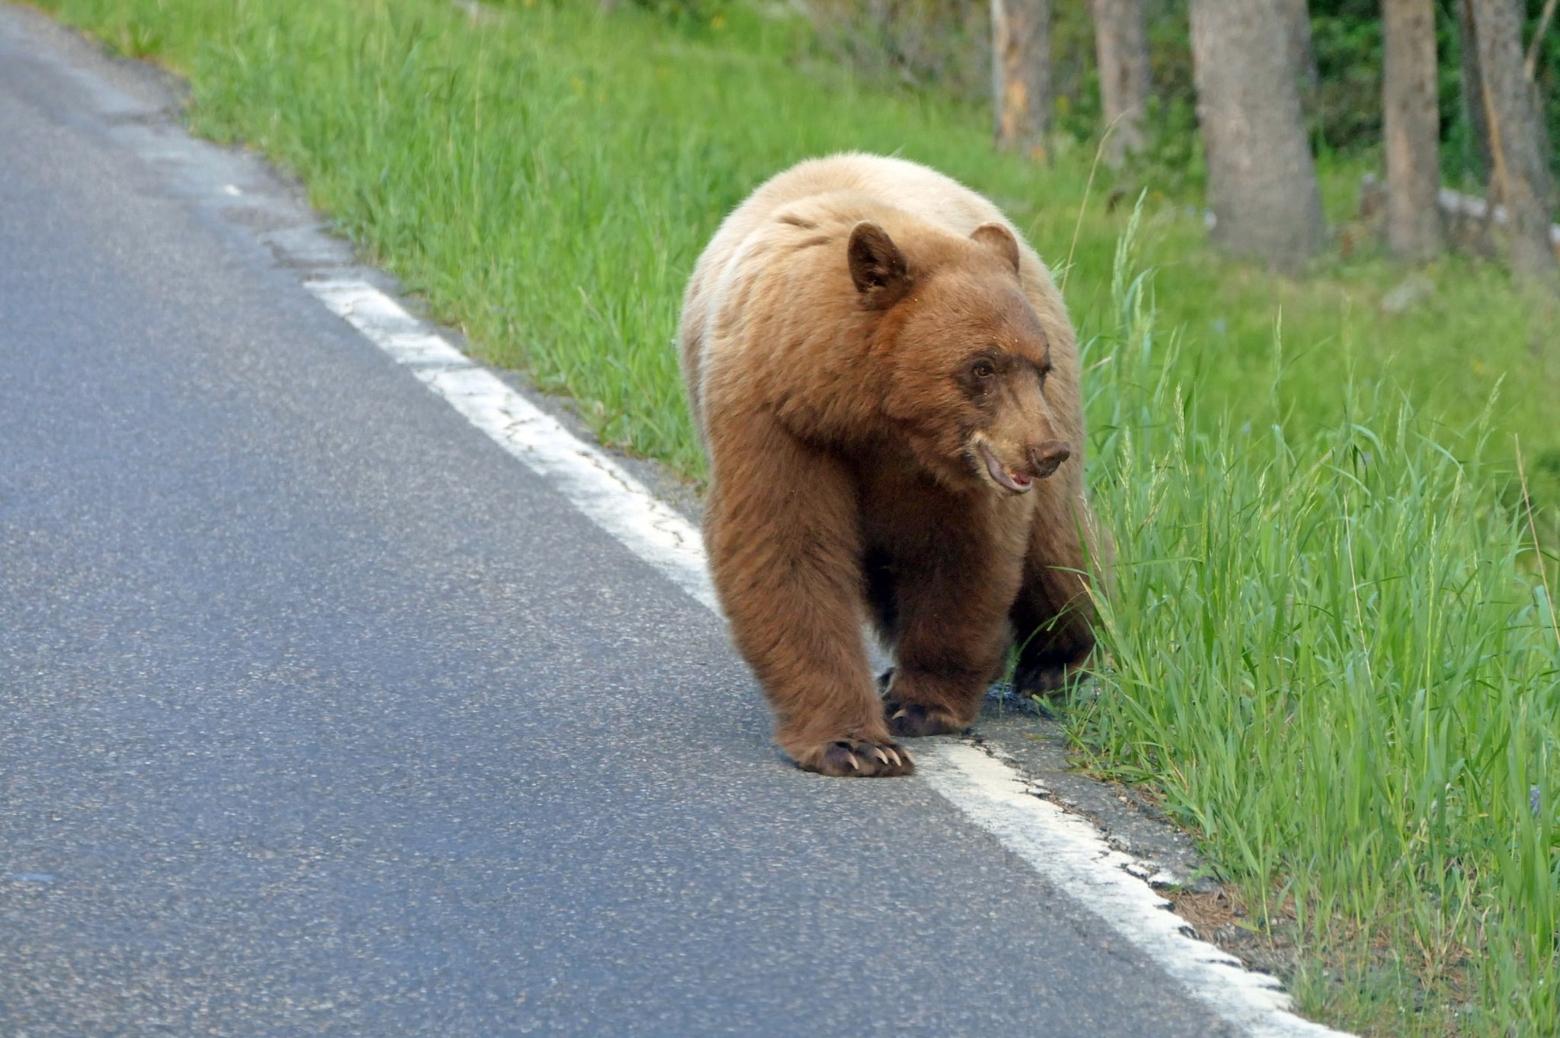 Black bear crossing the road near Obsidian Creek; NPS / Diane Renkin